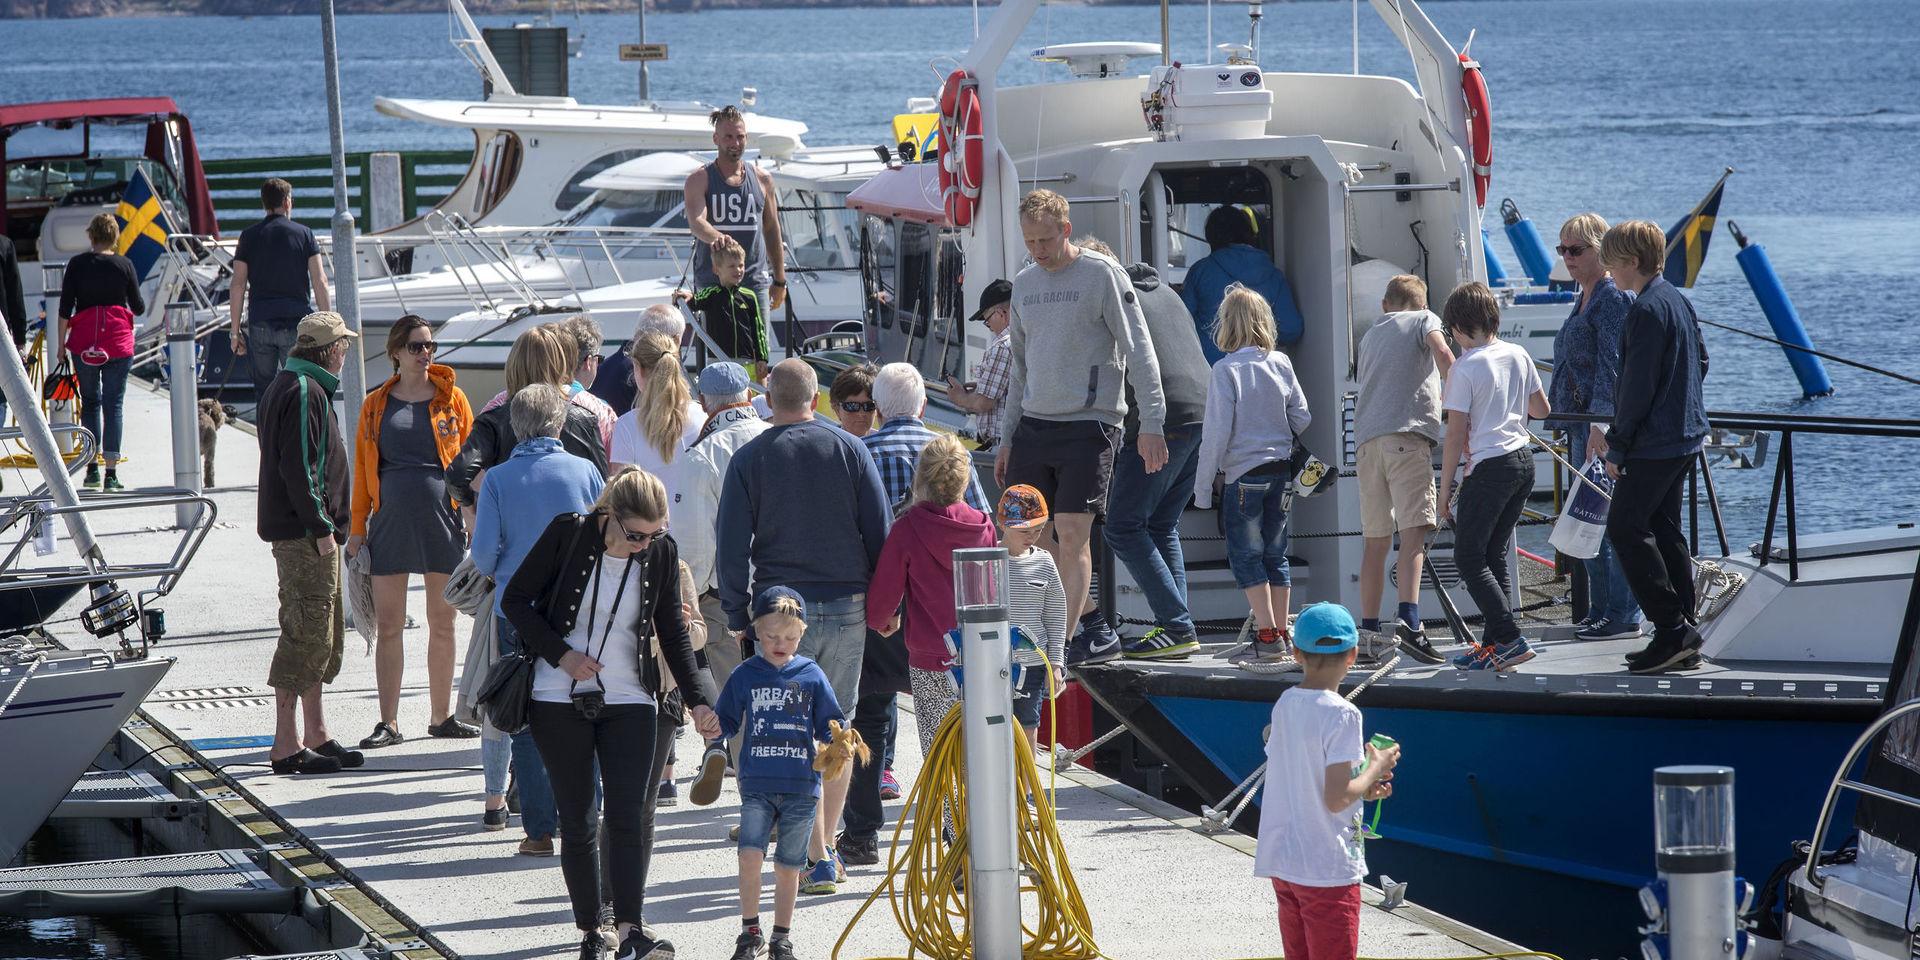 Båtmässan i Lysekil startade 2010 och har lockat en hel del folk. Men i år tar mässan paus på grund av för lågt intresse hos utställarna att delta.